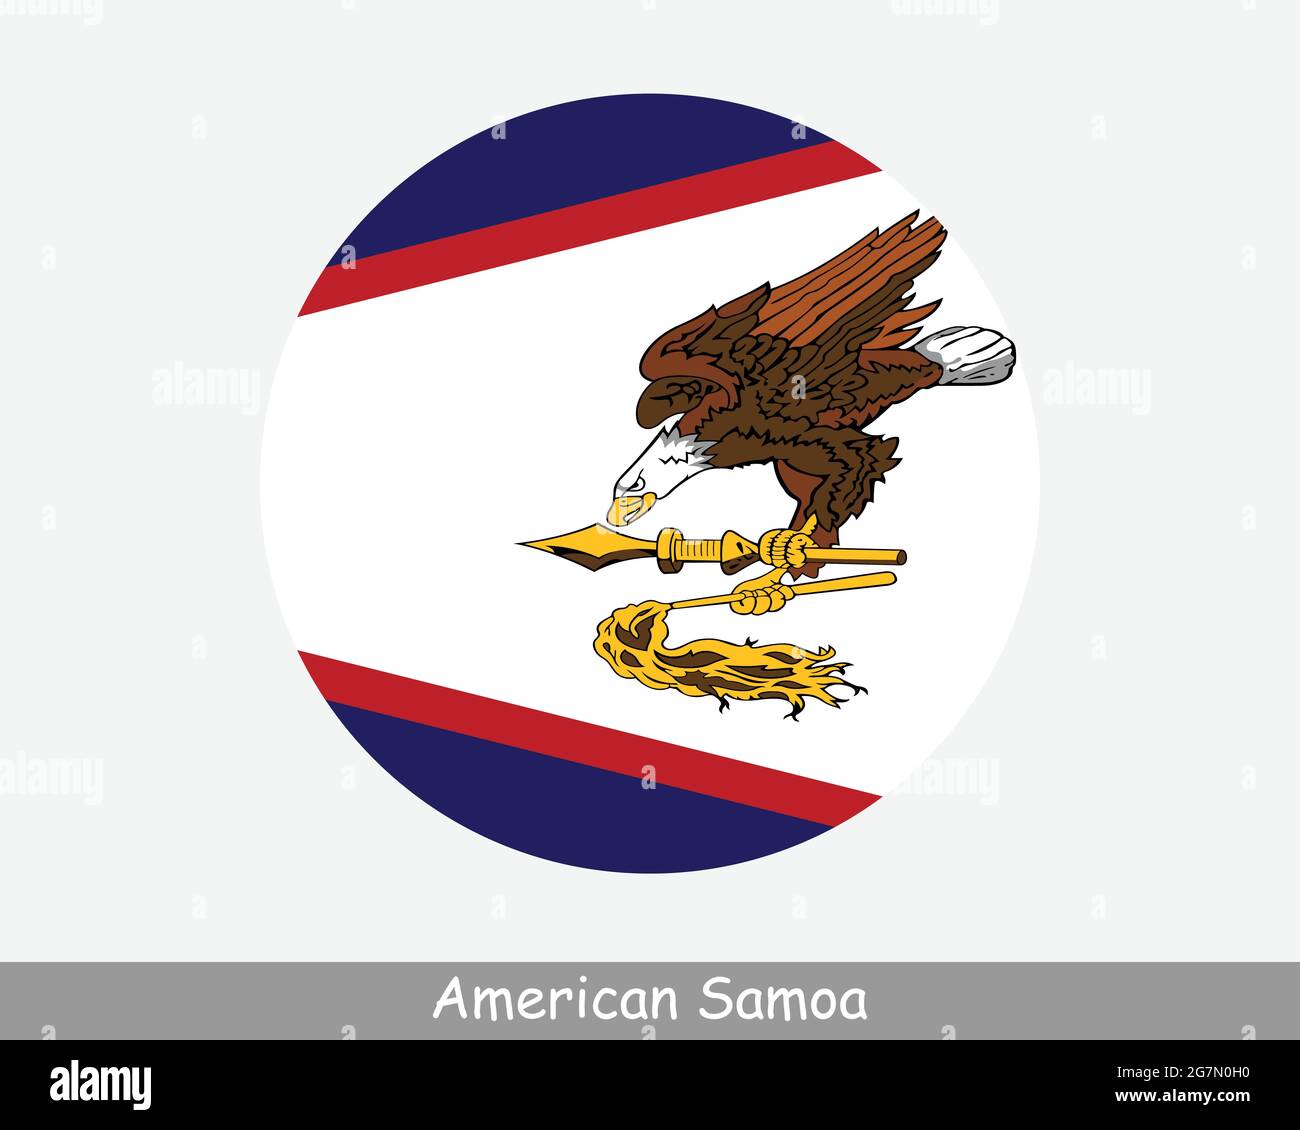 Amerikanische Samoa Runde Kreisflagge. American Samoan Kreisförmiges Banner-Symbol. EPS-Vektor Stock Vektor